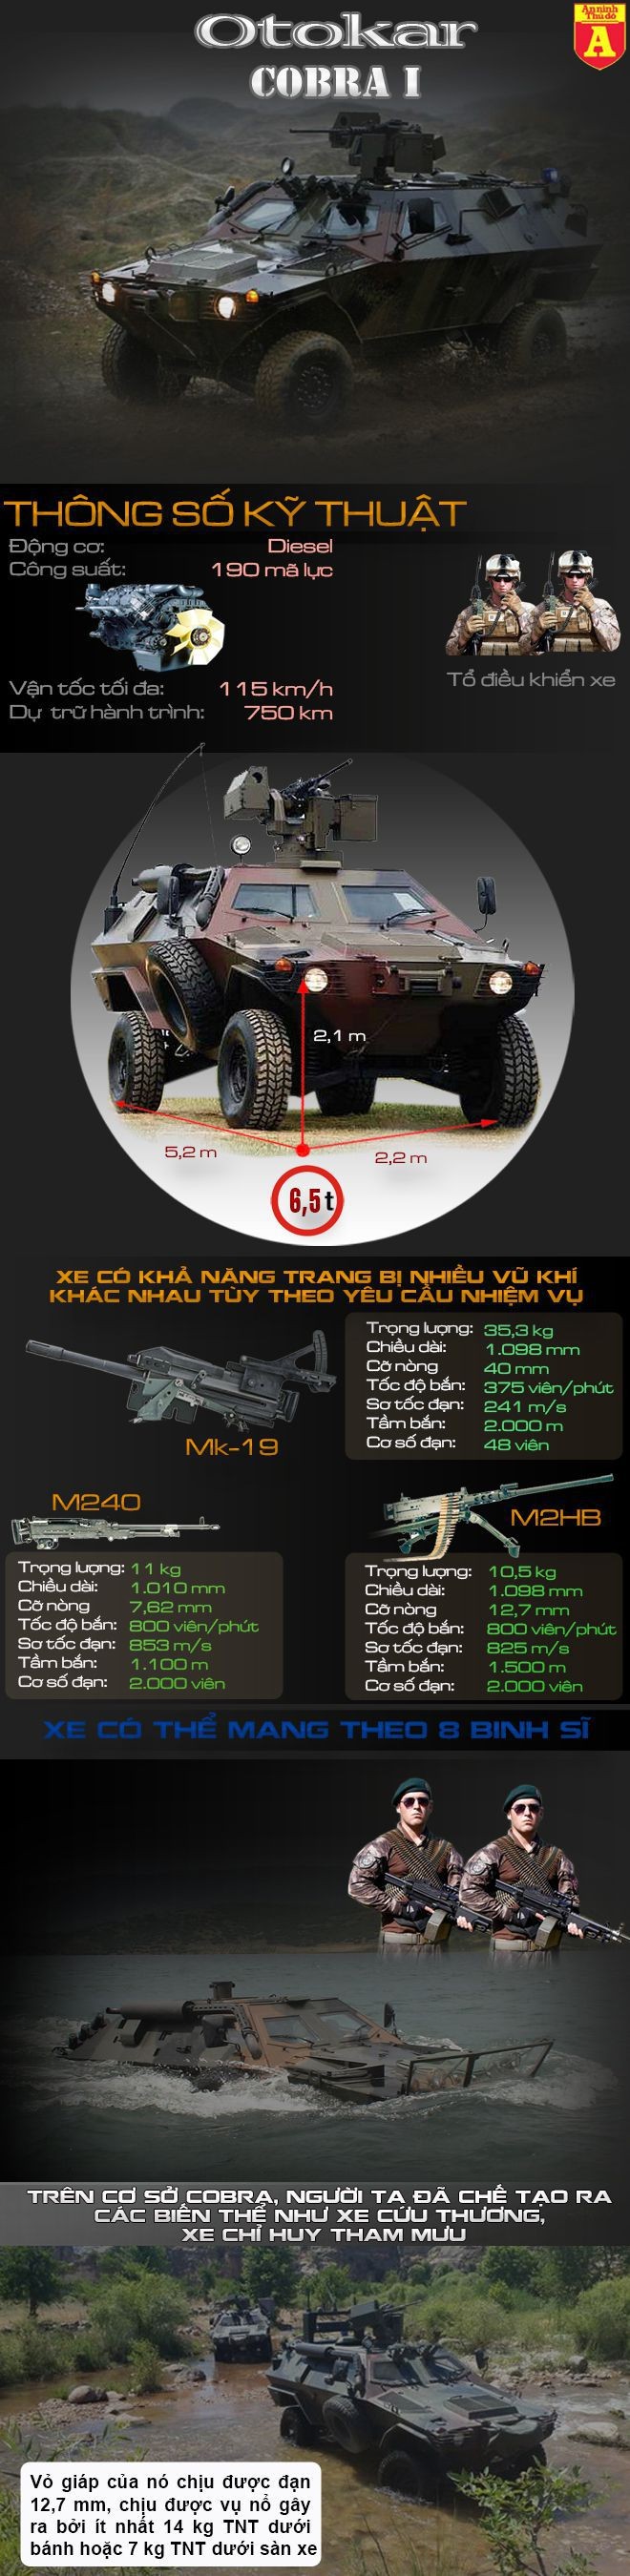 [Infographic] Việt Nam có nên mua xe thiết giáp Otokar Cobra I thay thế V-100? ảnh 2